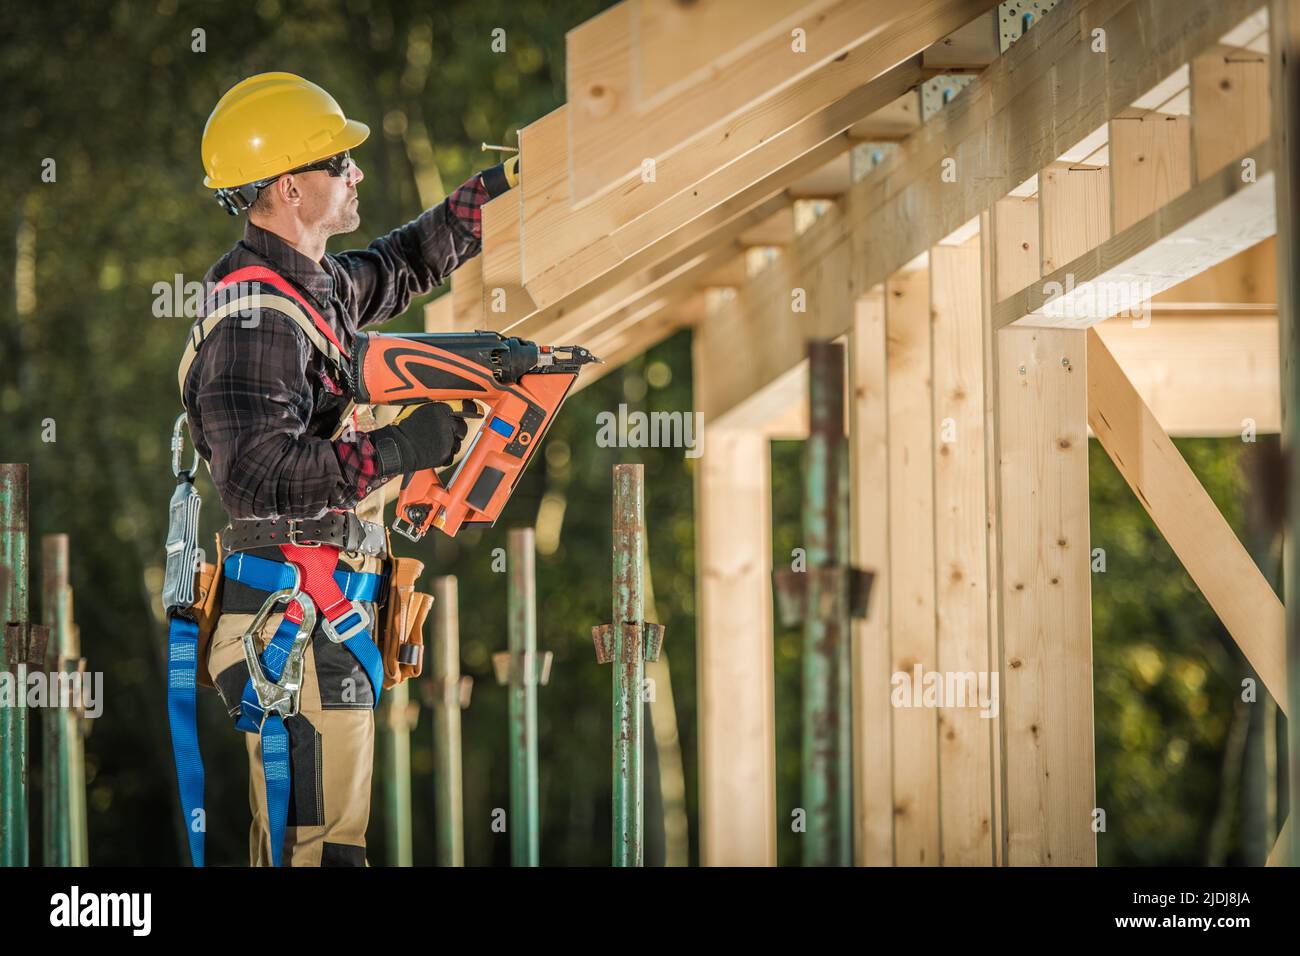 Professionell ausgestatteter kaukasischer Holzschnitzer bei seiner Arbeit 40s am Finishing des Holzdachskeletts mit dem Nail Gun Construction Tool. Konstruktion Si Stockfoto